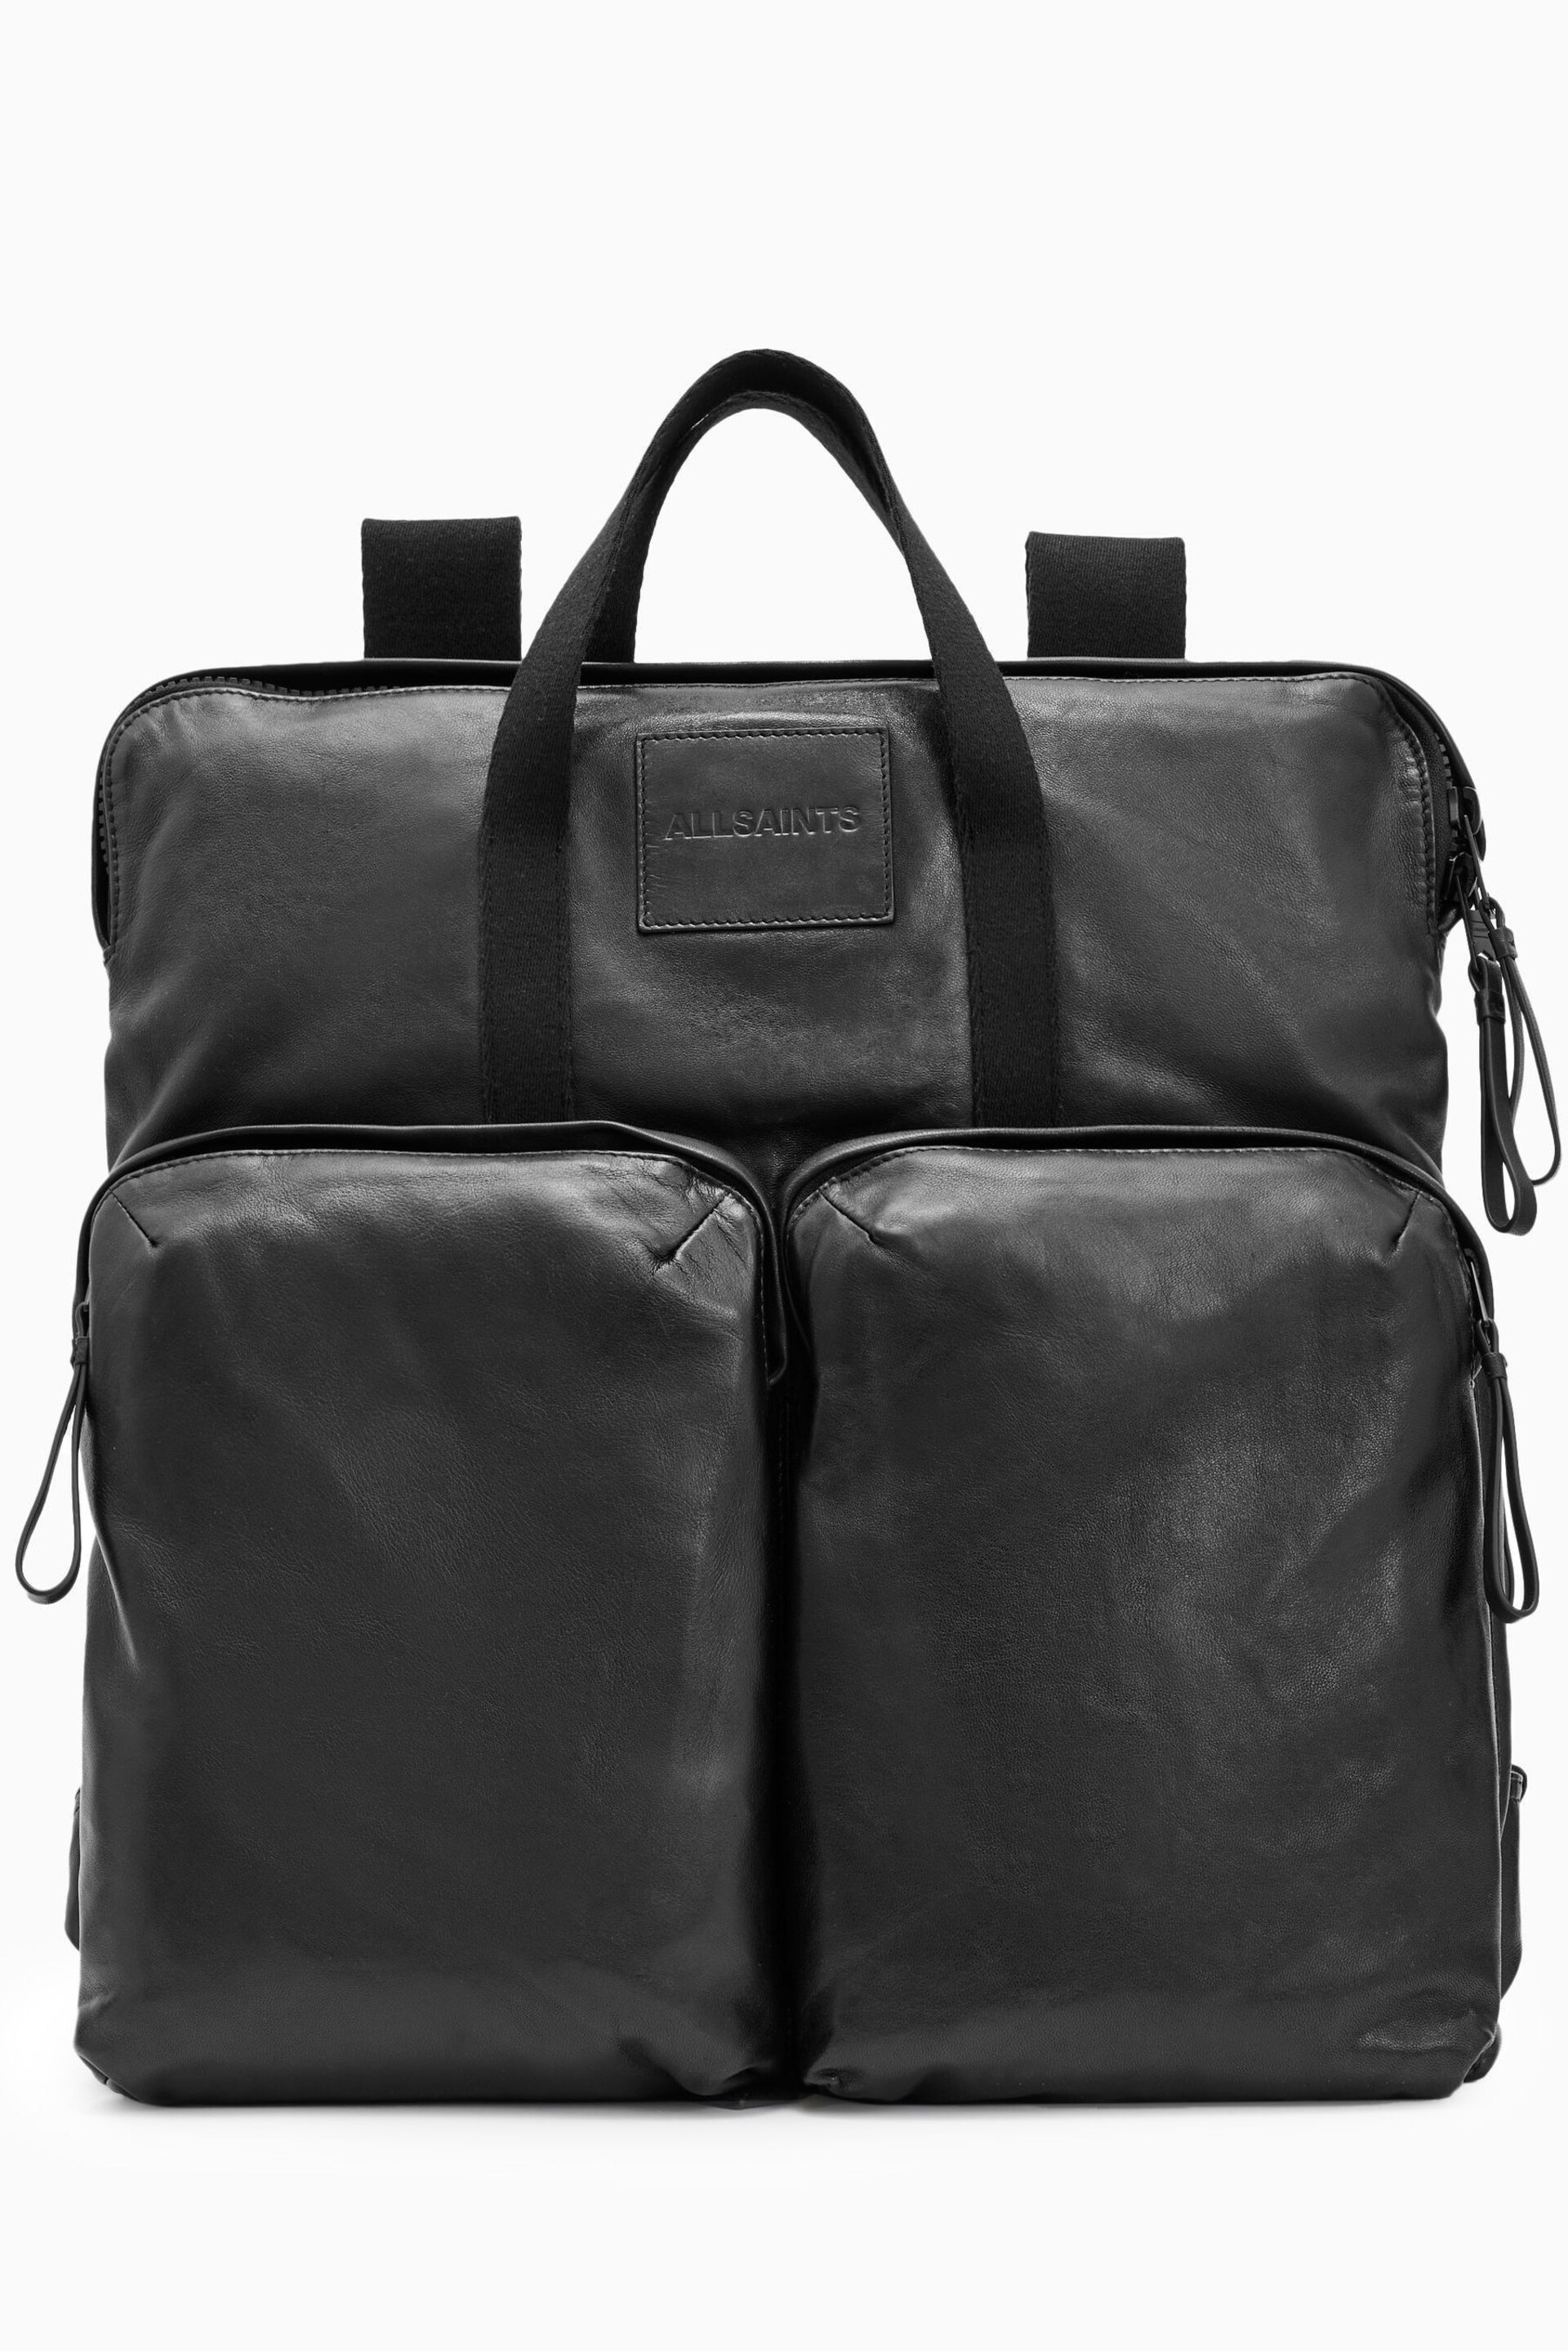 AllSaints Black Force Backpack - Image 3 of 7